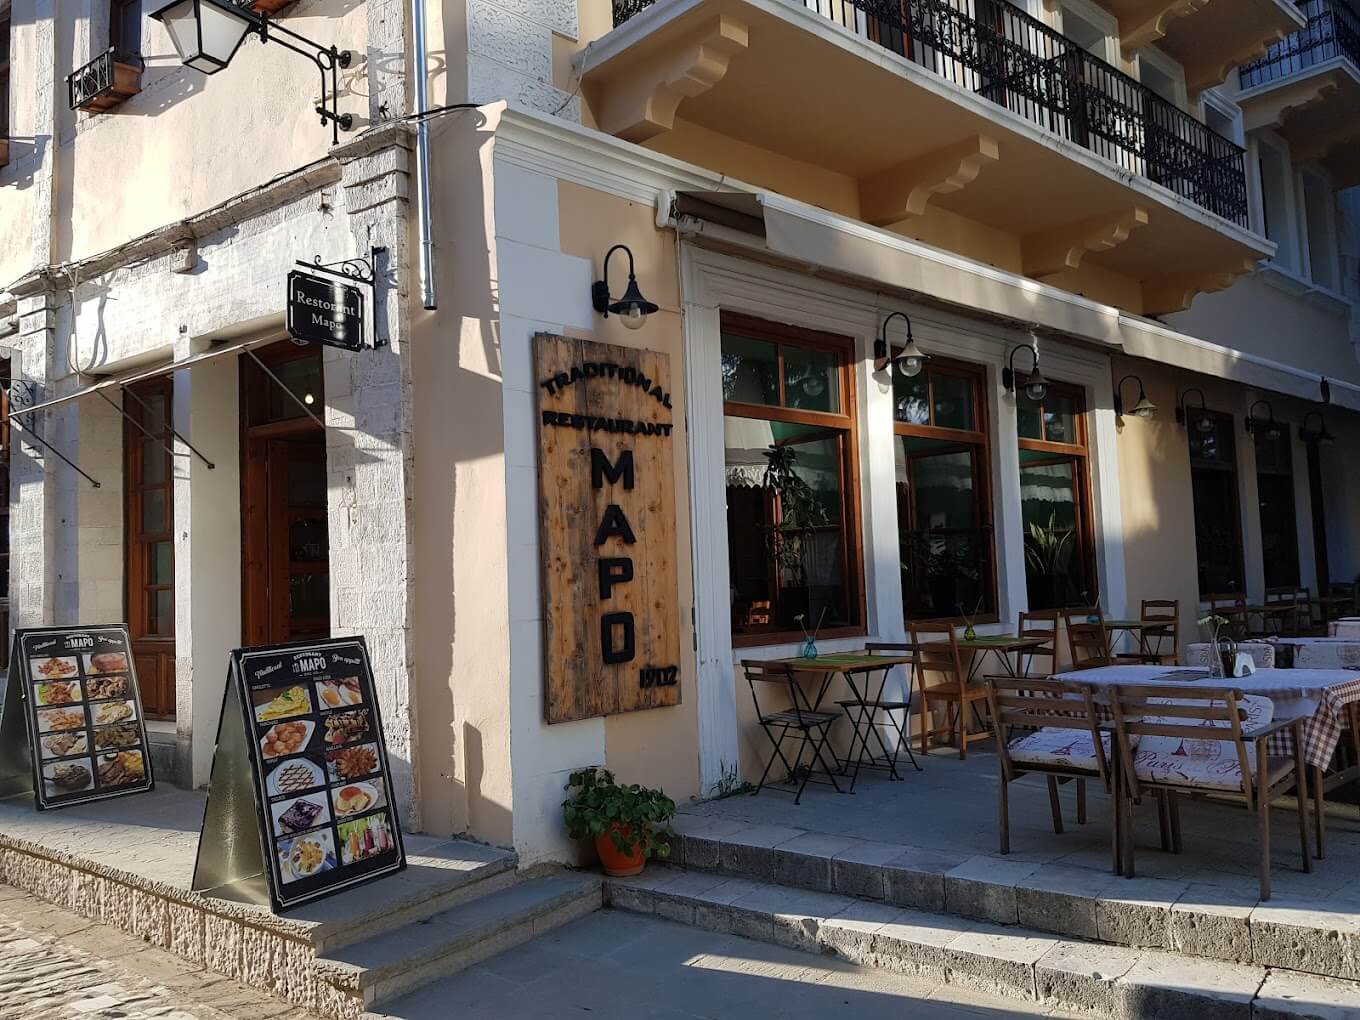 Mapo es un encantador restaurante familiar situado en la plaza principal del casco antiguo. Este lugar acogedor y acogedor ofrece una experiencia culinaria única, fusionando modernidad con tradición en un ambiente agradable y relajante.